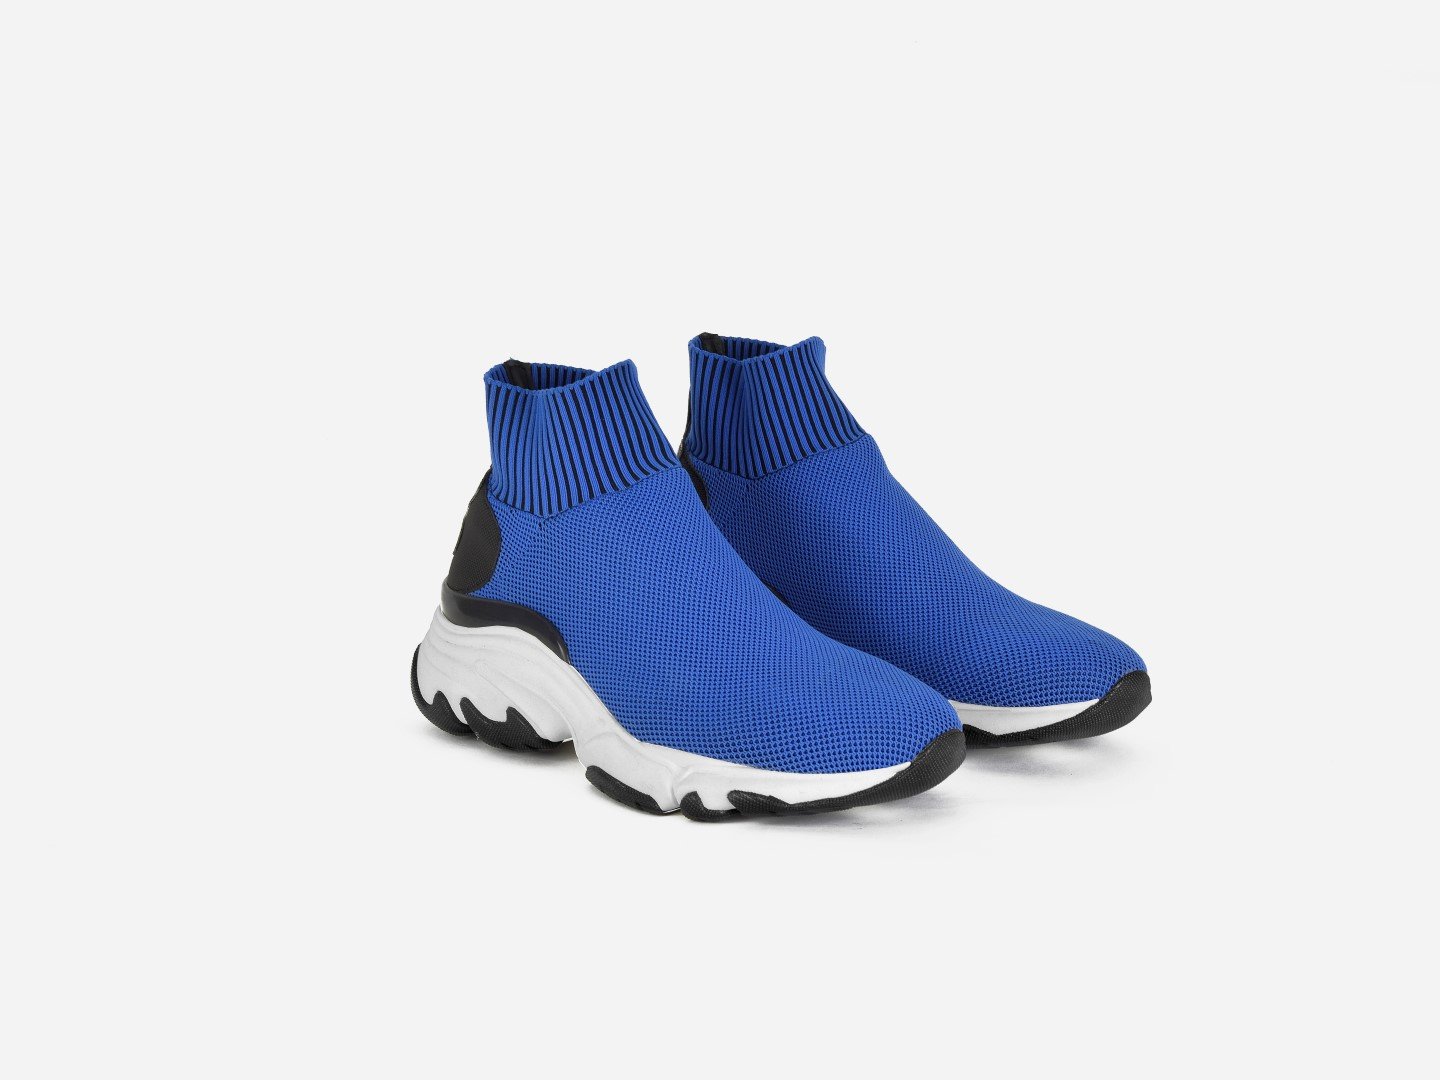 pregis ryder blue sock oversized runner sneaker made in Portugal